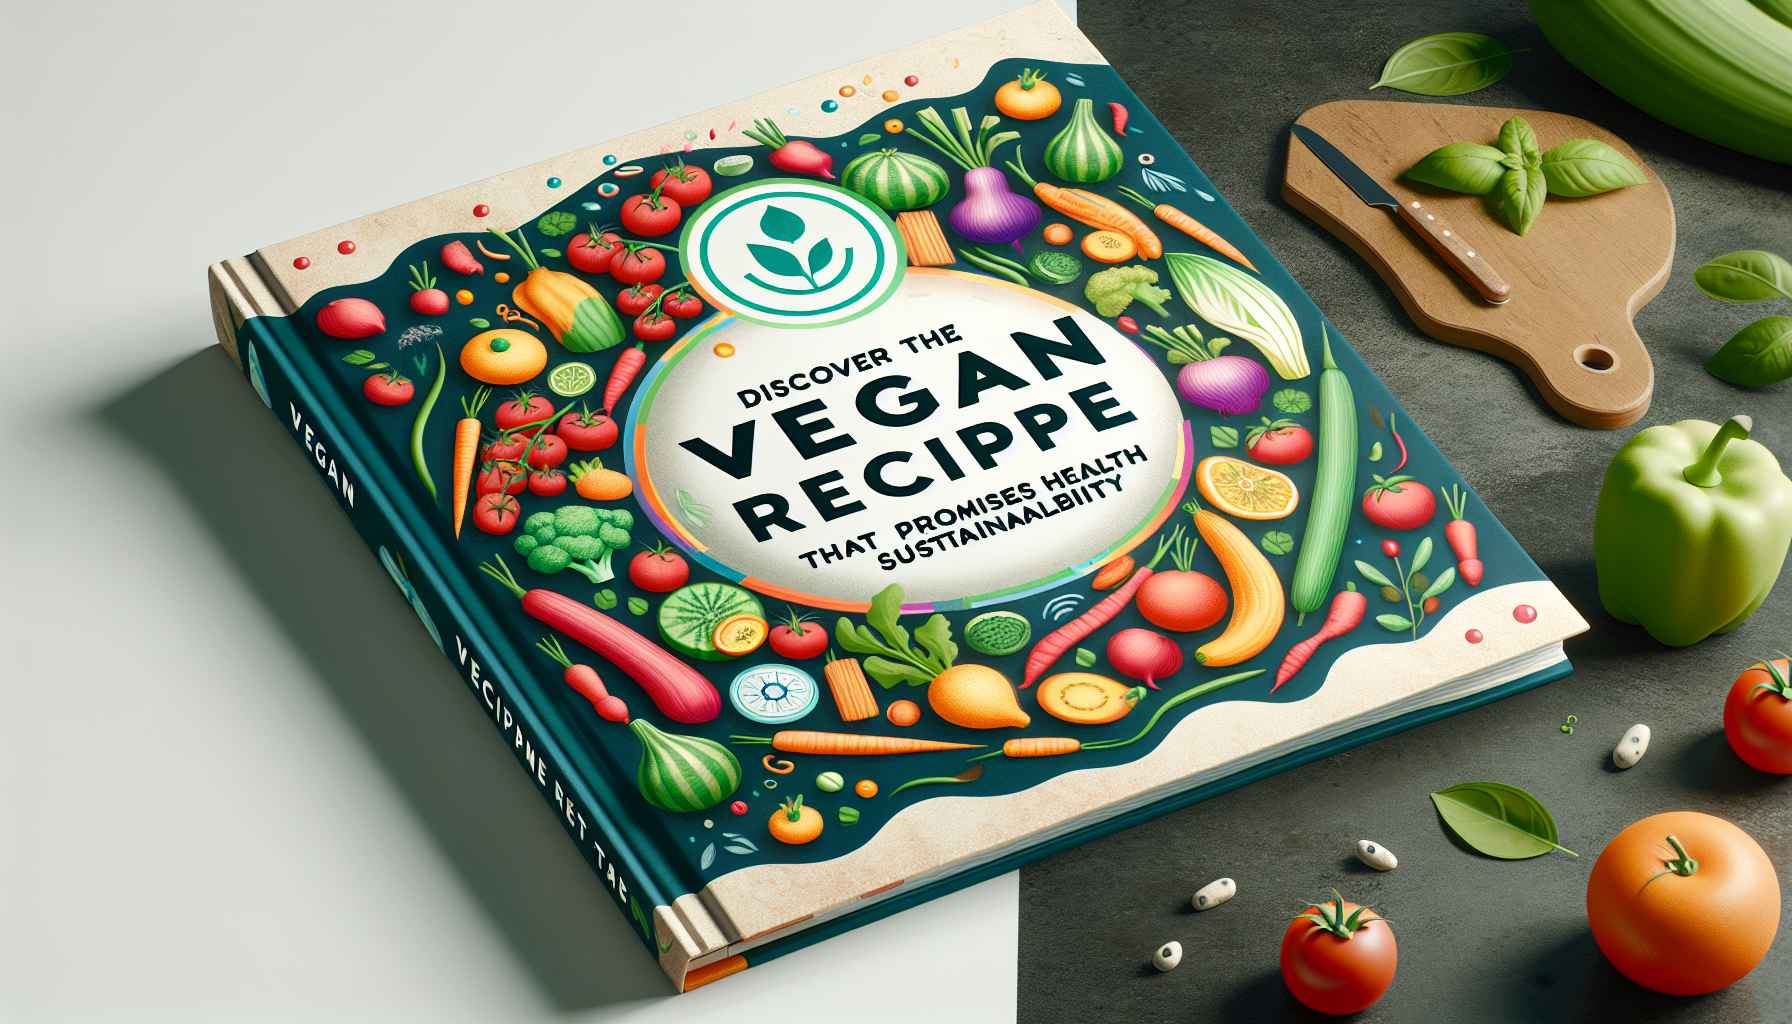 Descubra a Receita Vegana que Promete Saúde e Sustentabilidade